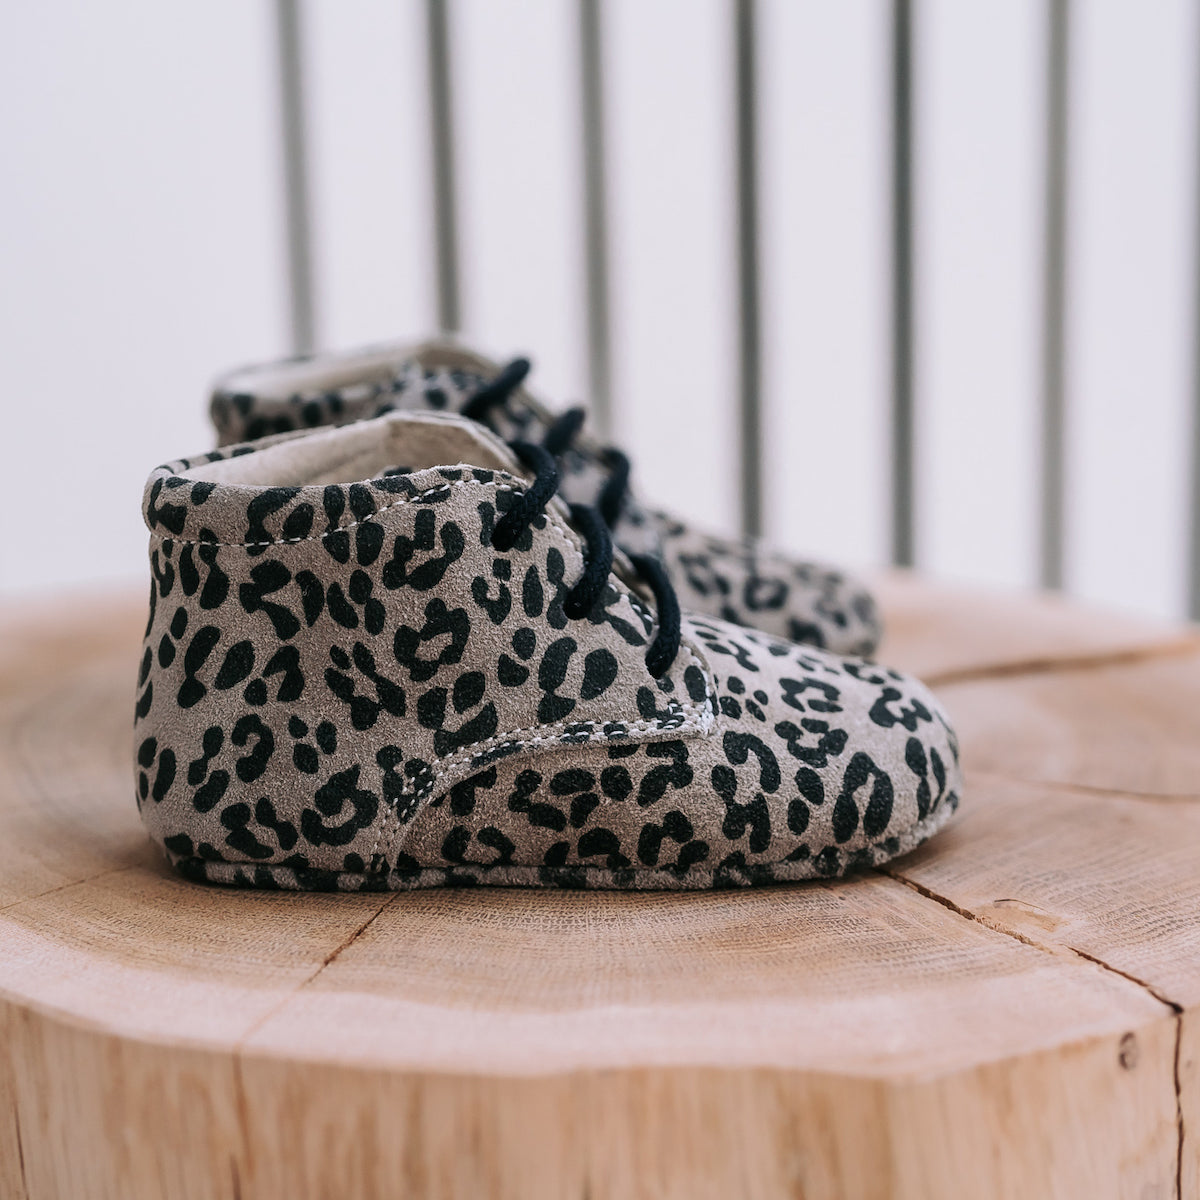 Op zoek naar stijlvolle (eerste) schoentjes van goede kwaliteit? Dat zijn de Mavies classic boots leopard grey. De babyschoenen zijn van grijskleurig leer met een trendy luipaardprintje en hebben een boots-model. VanZus.